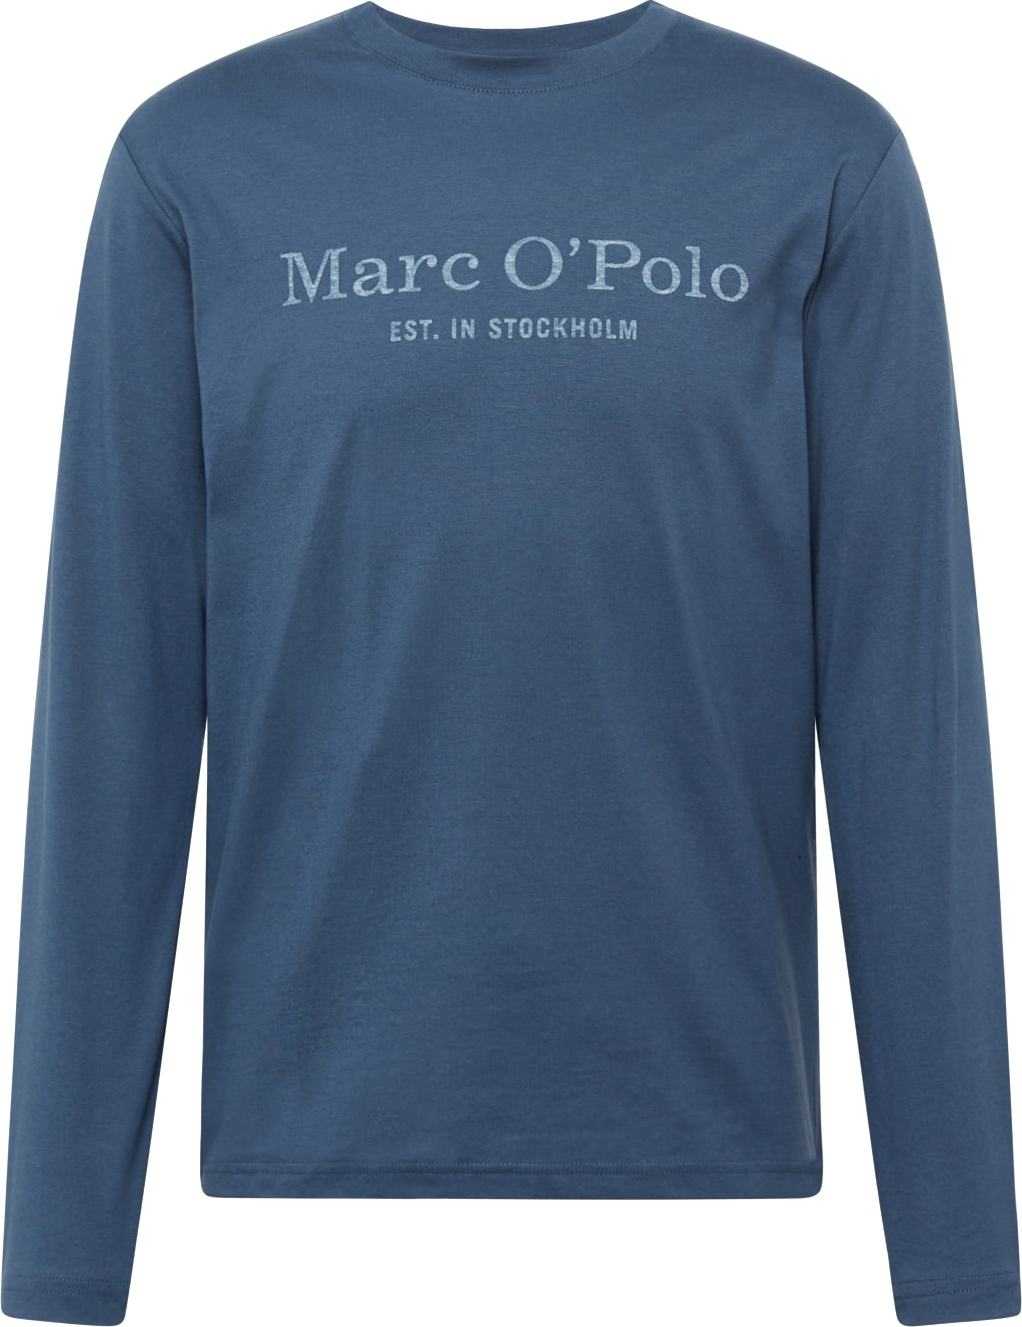 Marc O'Polo Tričko marine modrá / bílý melír